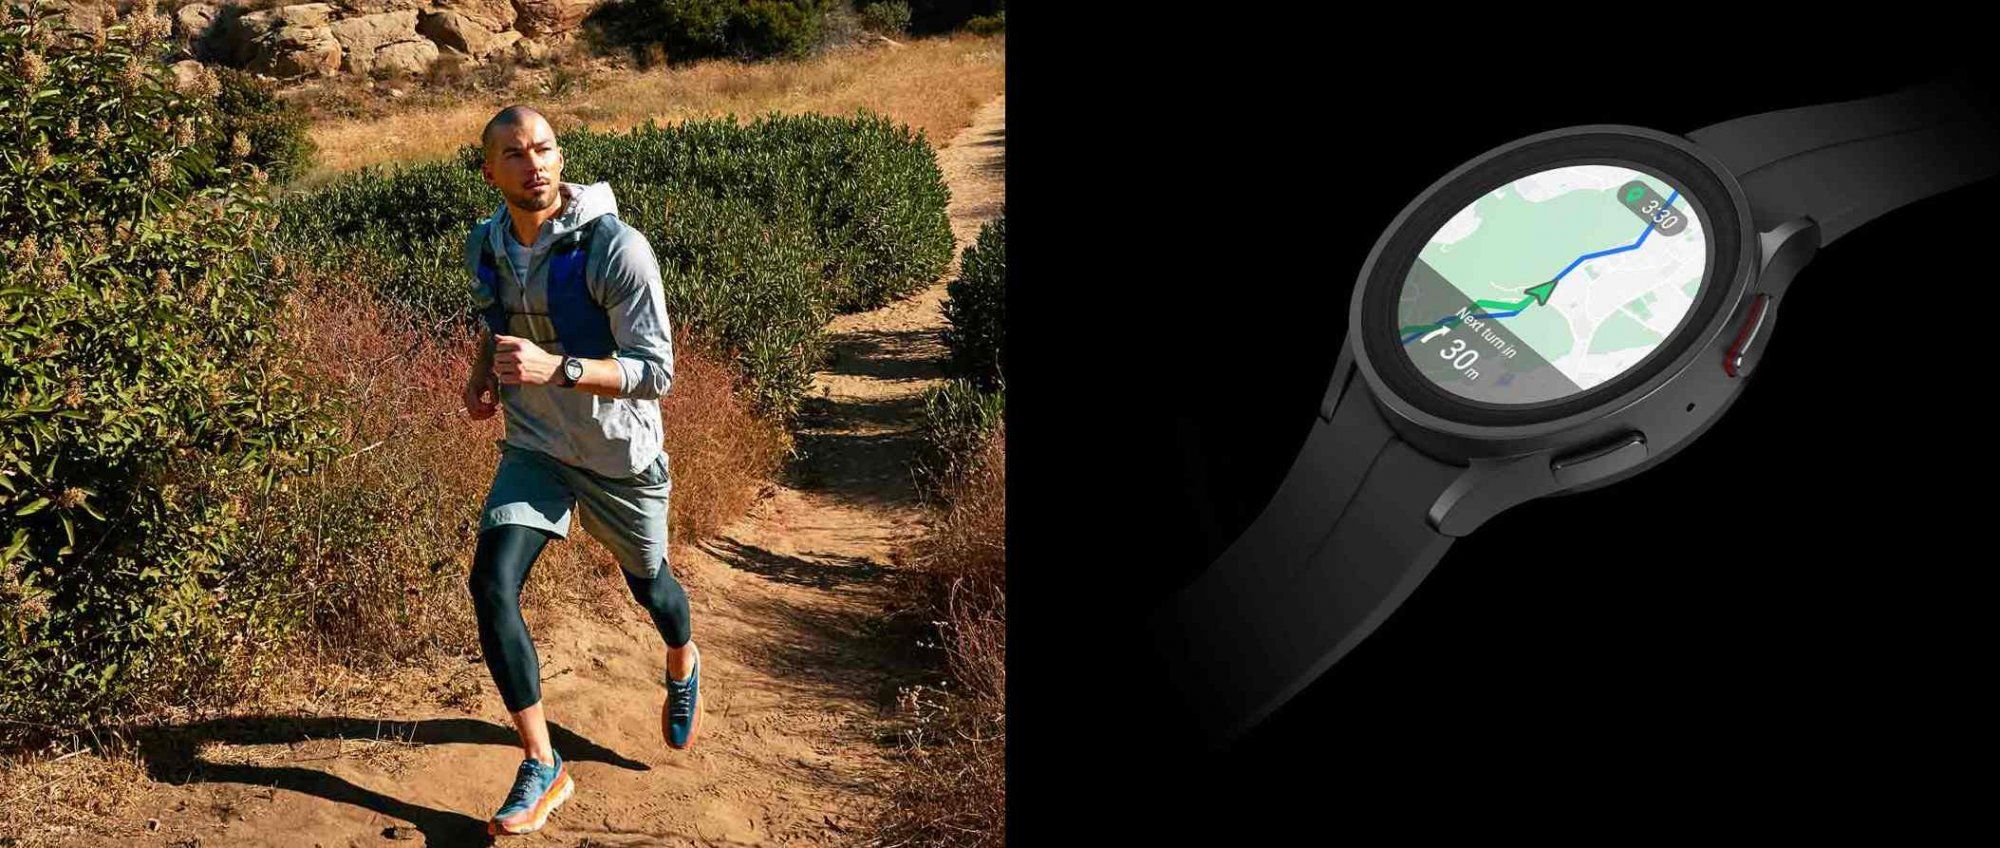 Samsung Galaxy Watch4 okosóra nagyteljesítményű okosóra egészségügyi funkciók Wear OS egyedi funkciók fejlett funkciók Google Pay EKG vér oxigénszint fitnesz óra zászlóshajó teljesítmény minőségi anyag